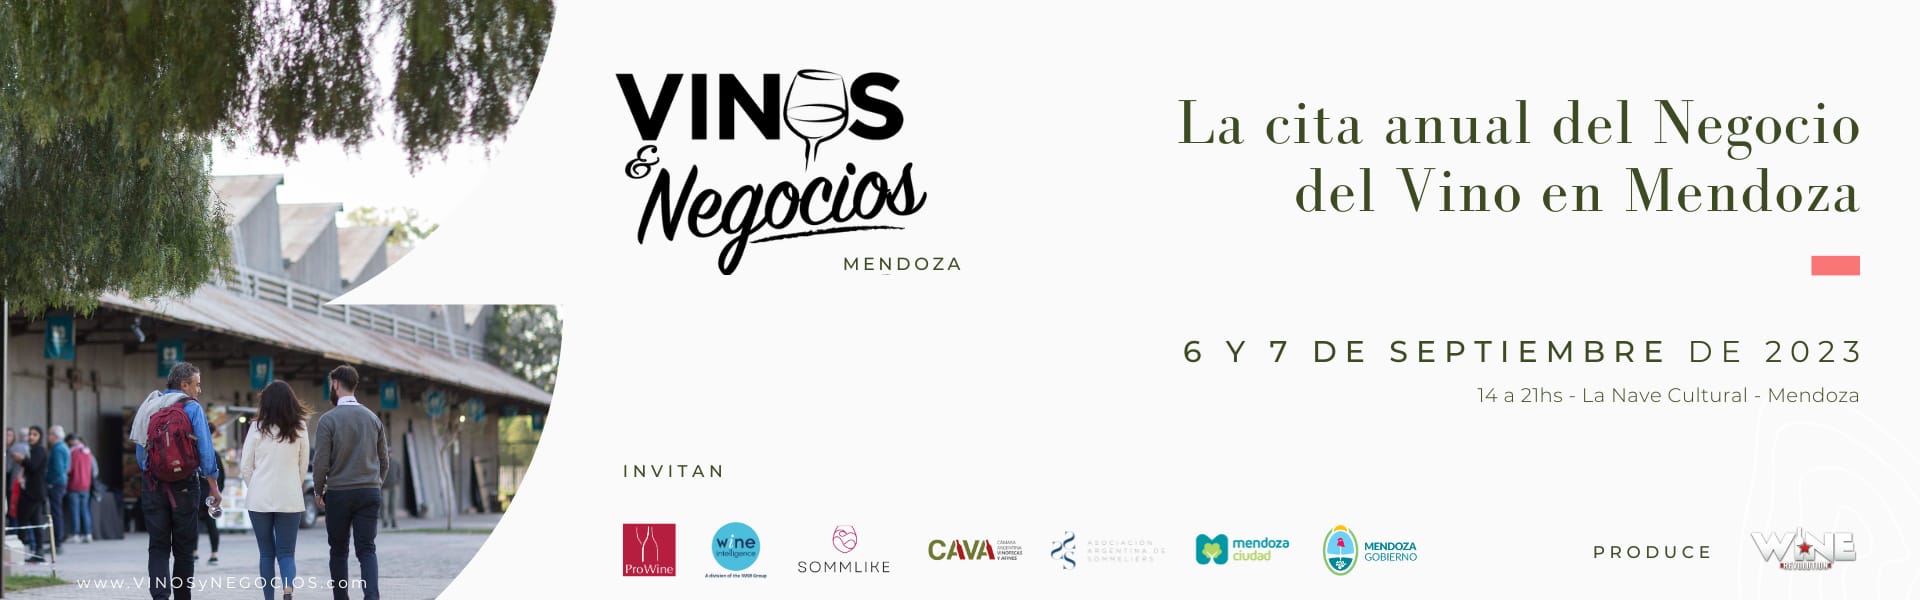 Con foco en Comercio Exterior, llega la 3ra edición de Expo Vinos & Negocios Mendoza